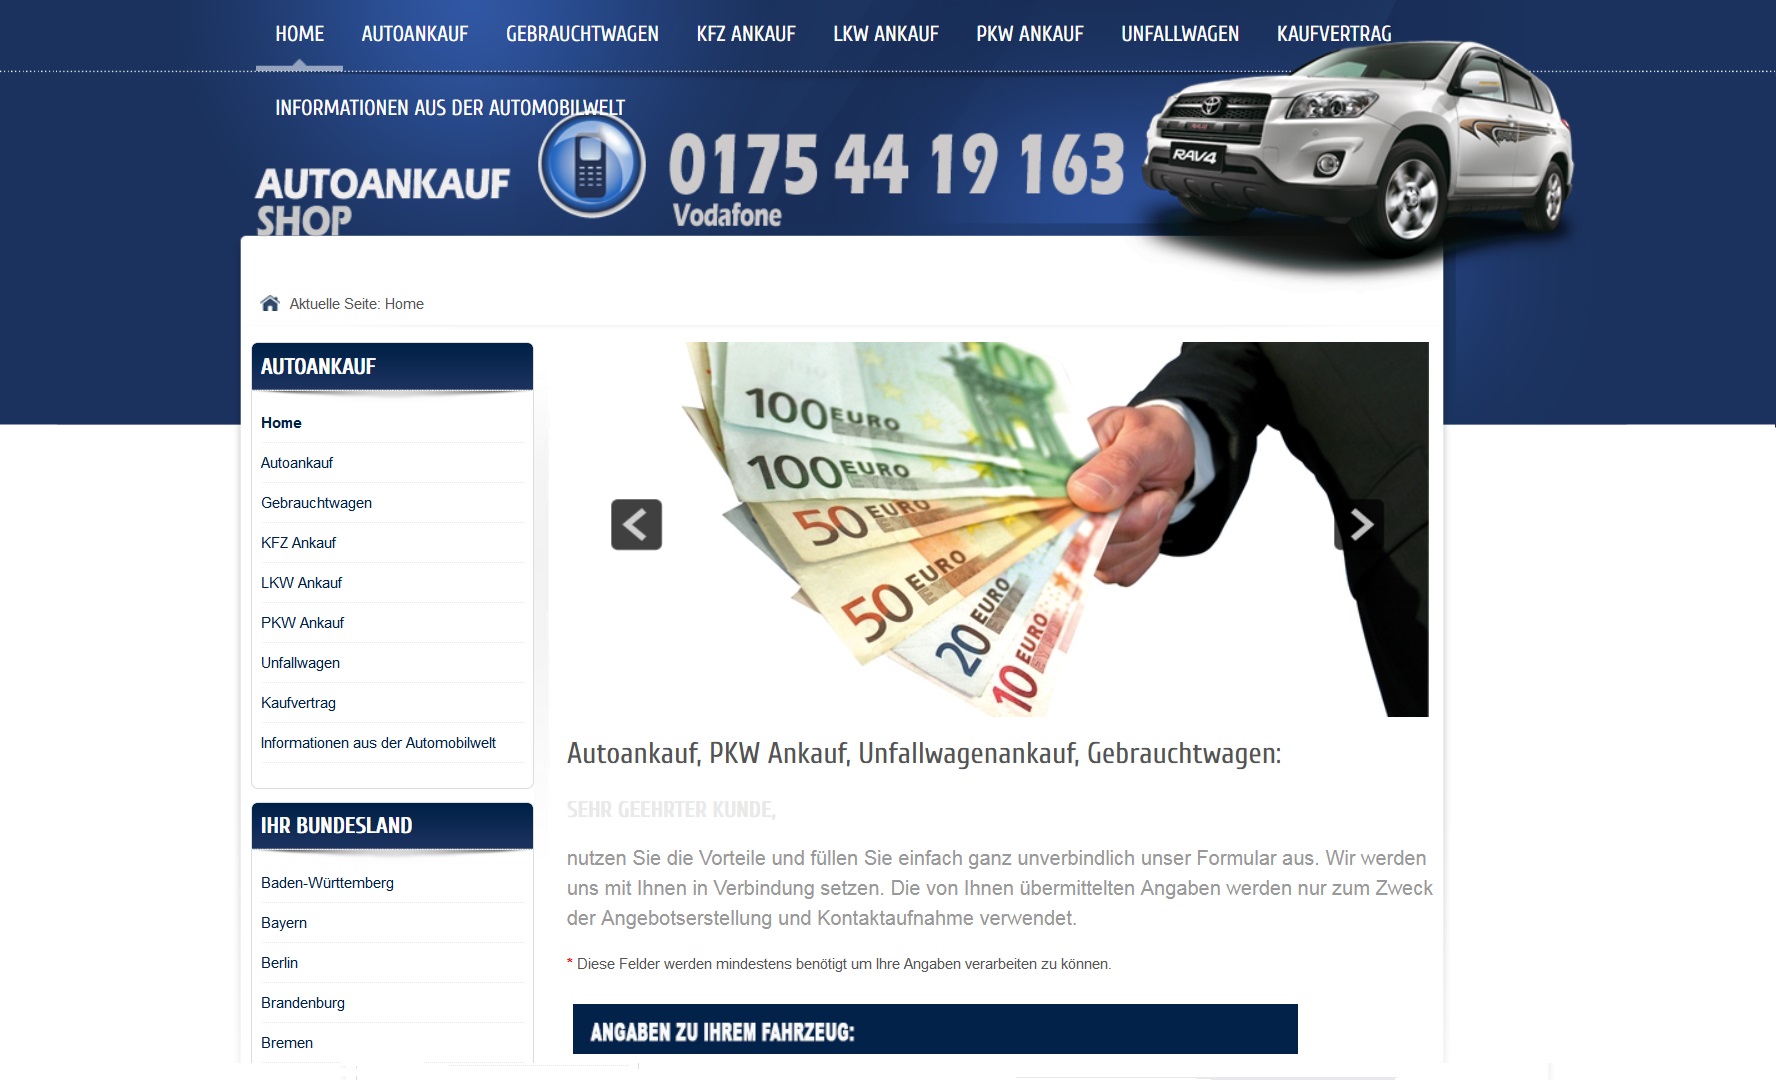 Autoankauf Laupheim - Jetzt Auto verkaufen in Laupheim und Höchstpreis erzielen!